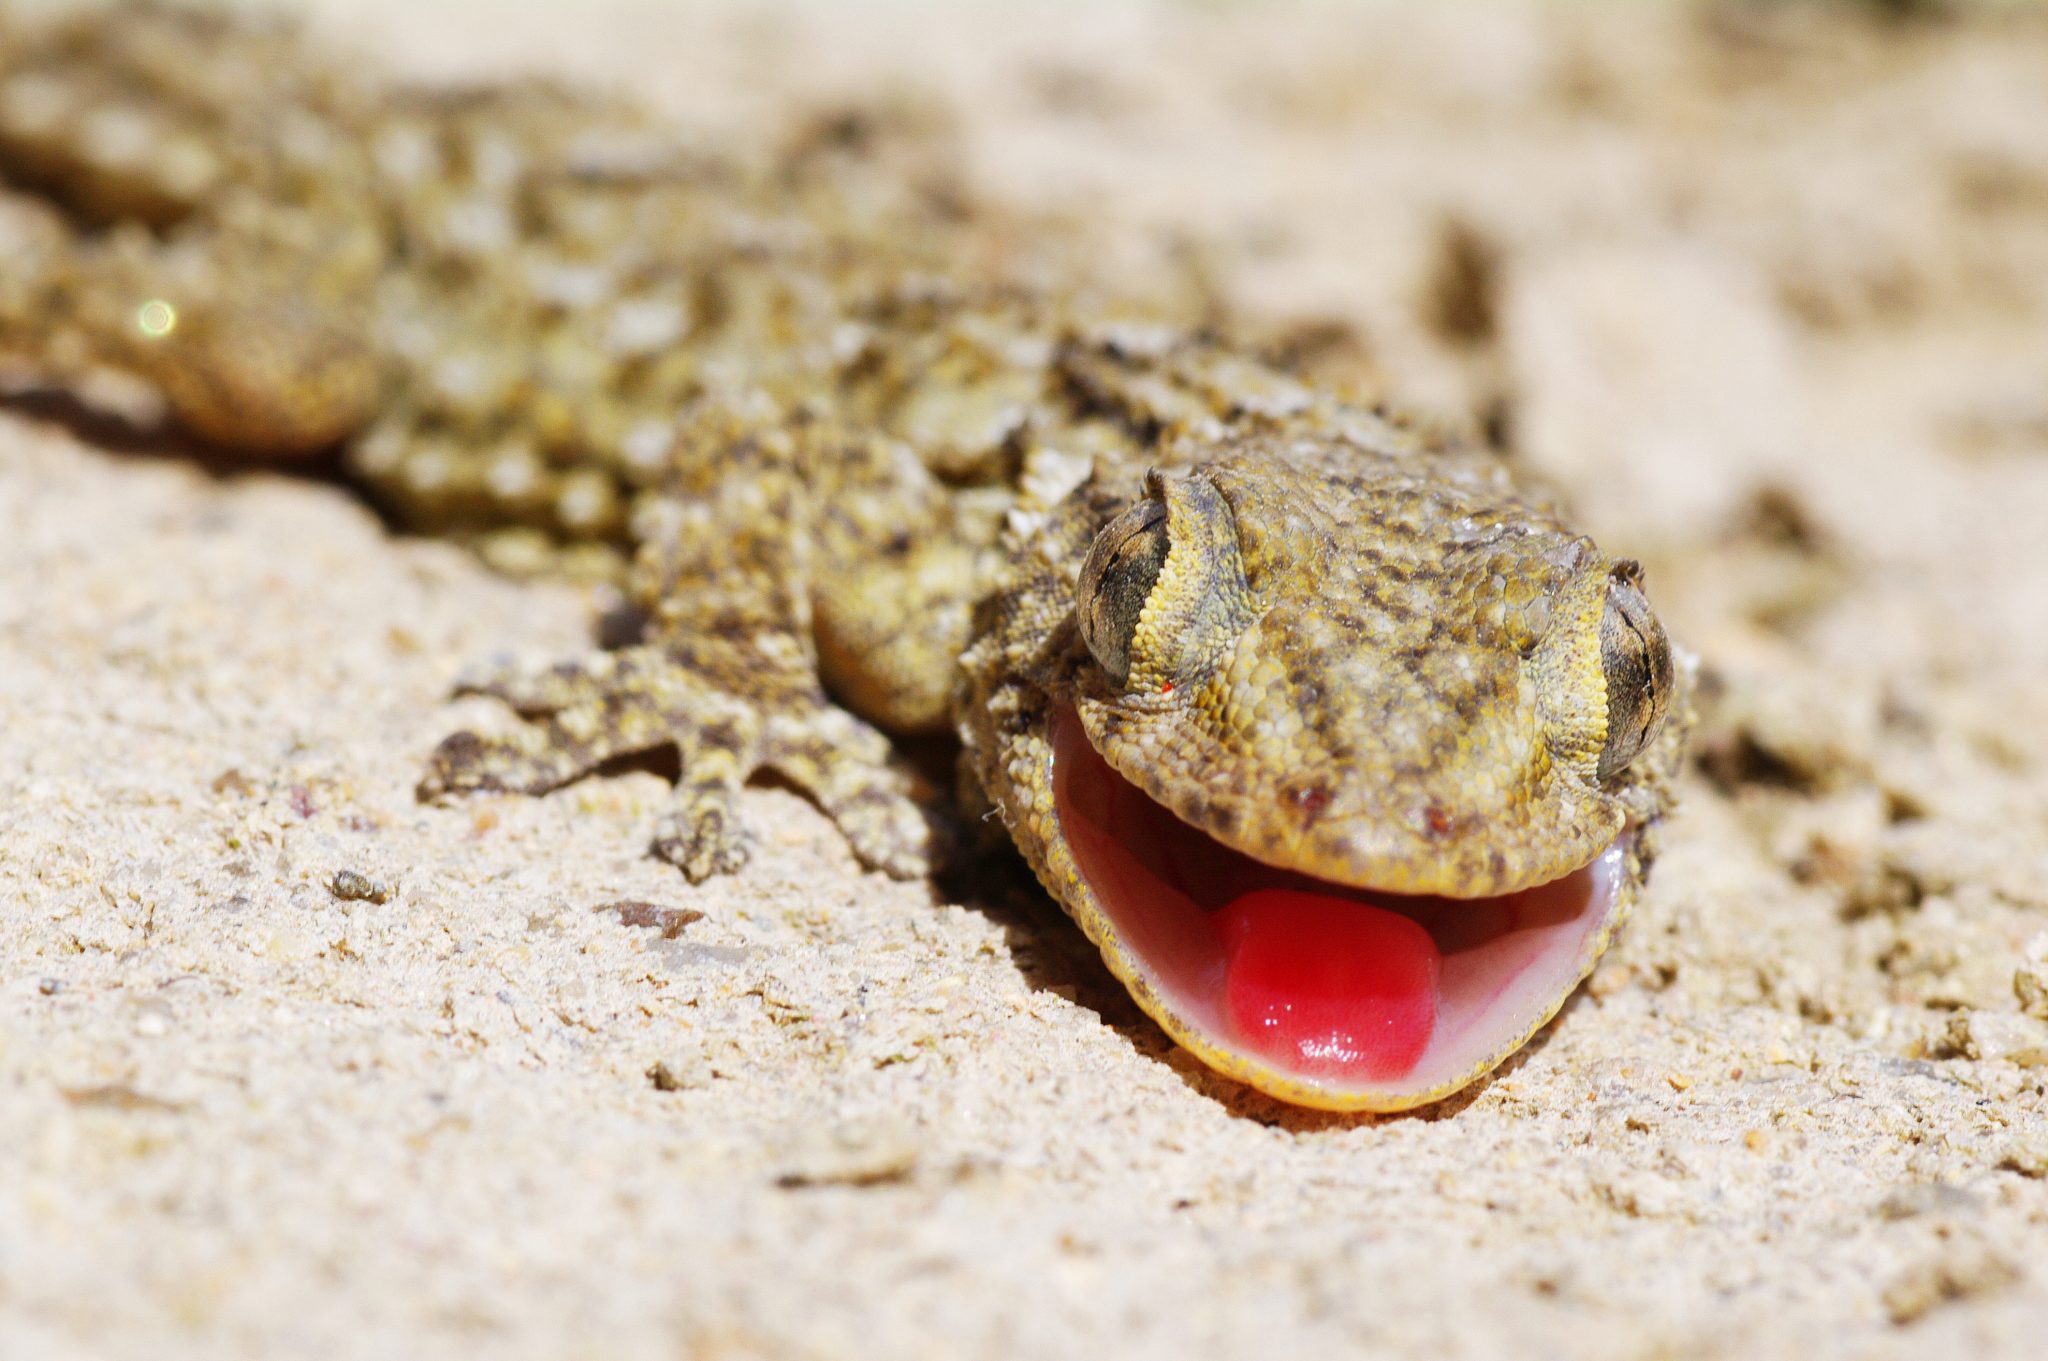 Gecko lizard smiling for the camera